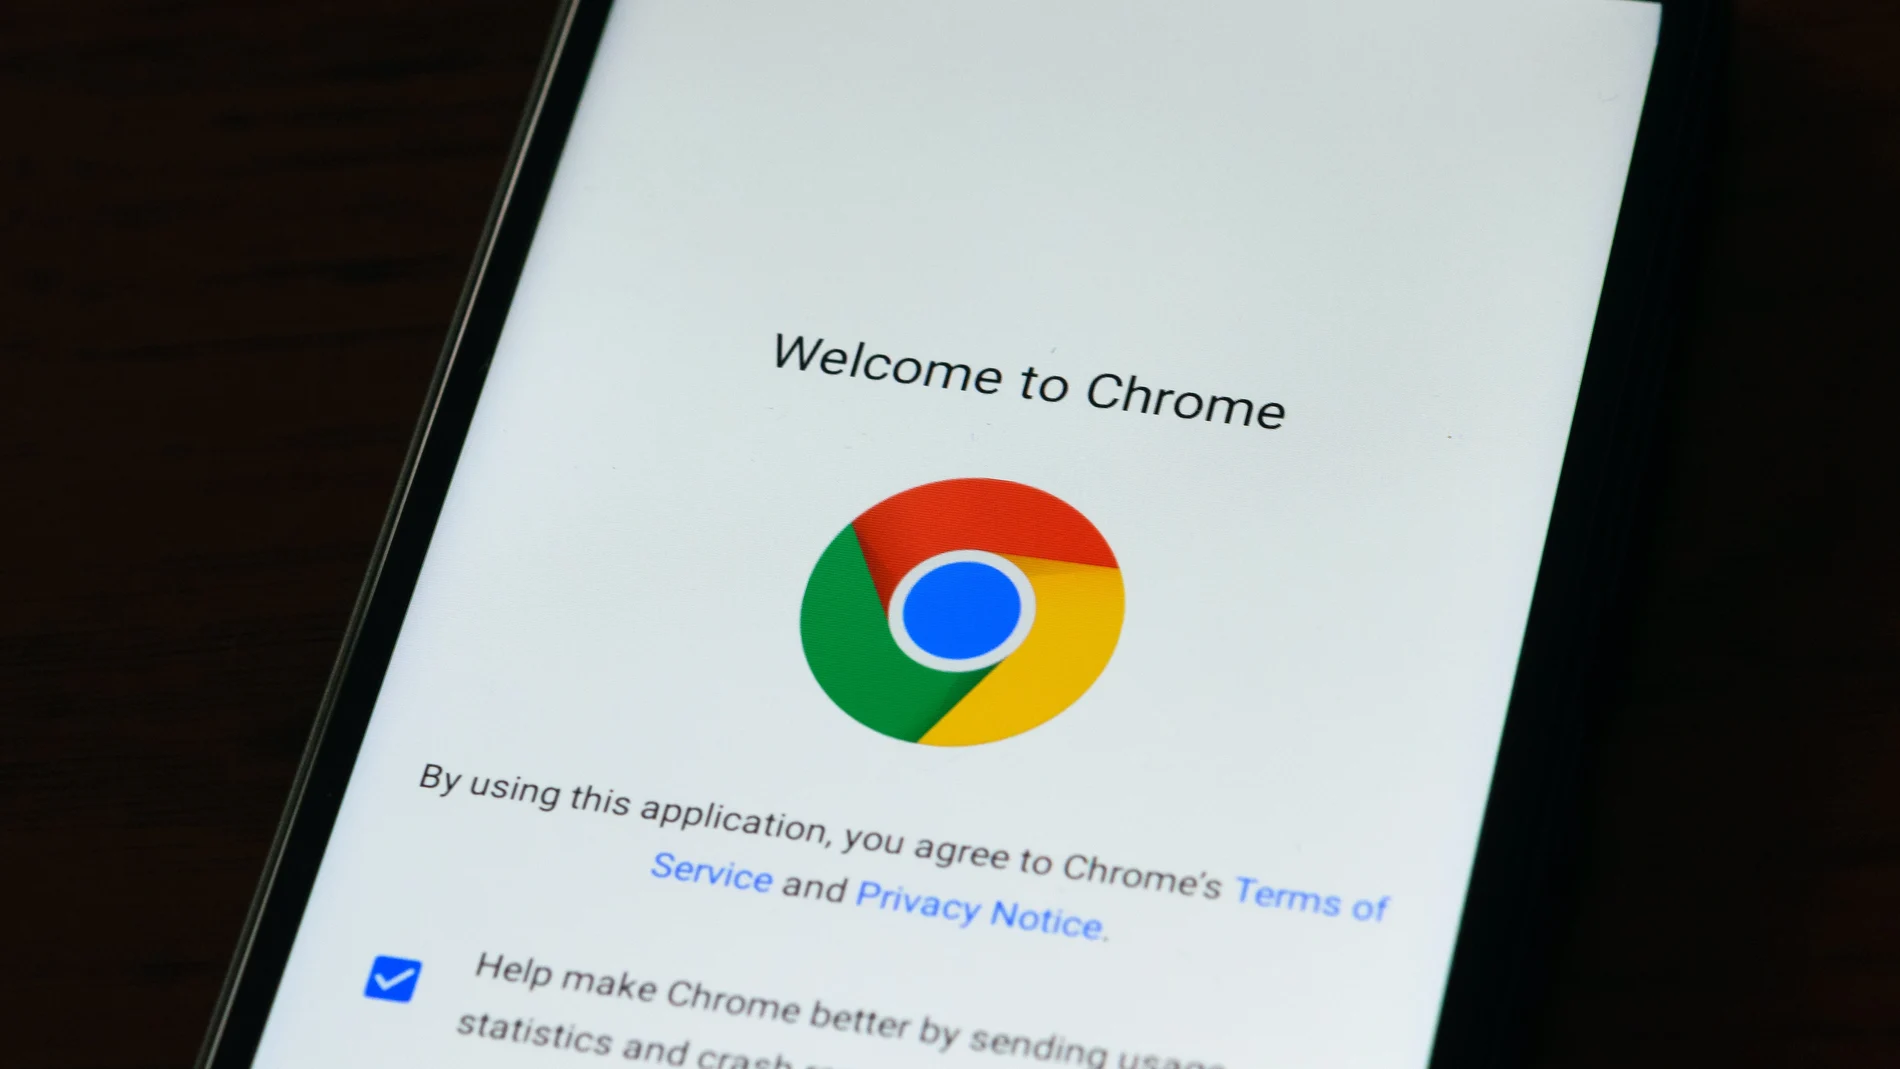 Sí Chrome no deja usar extensiones en Android, habrá que buscar el navegador que lo permita.